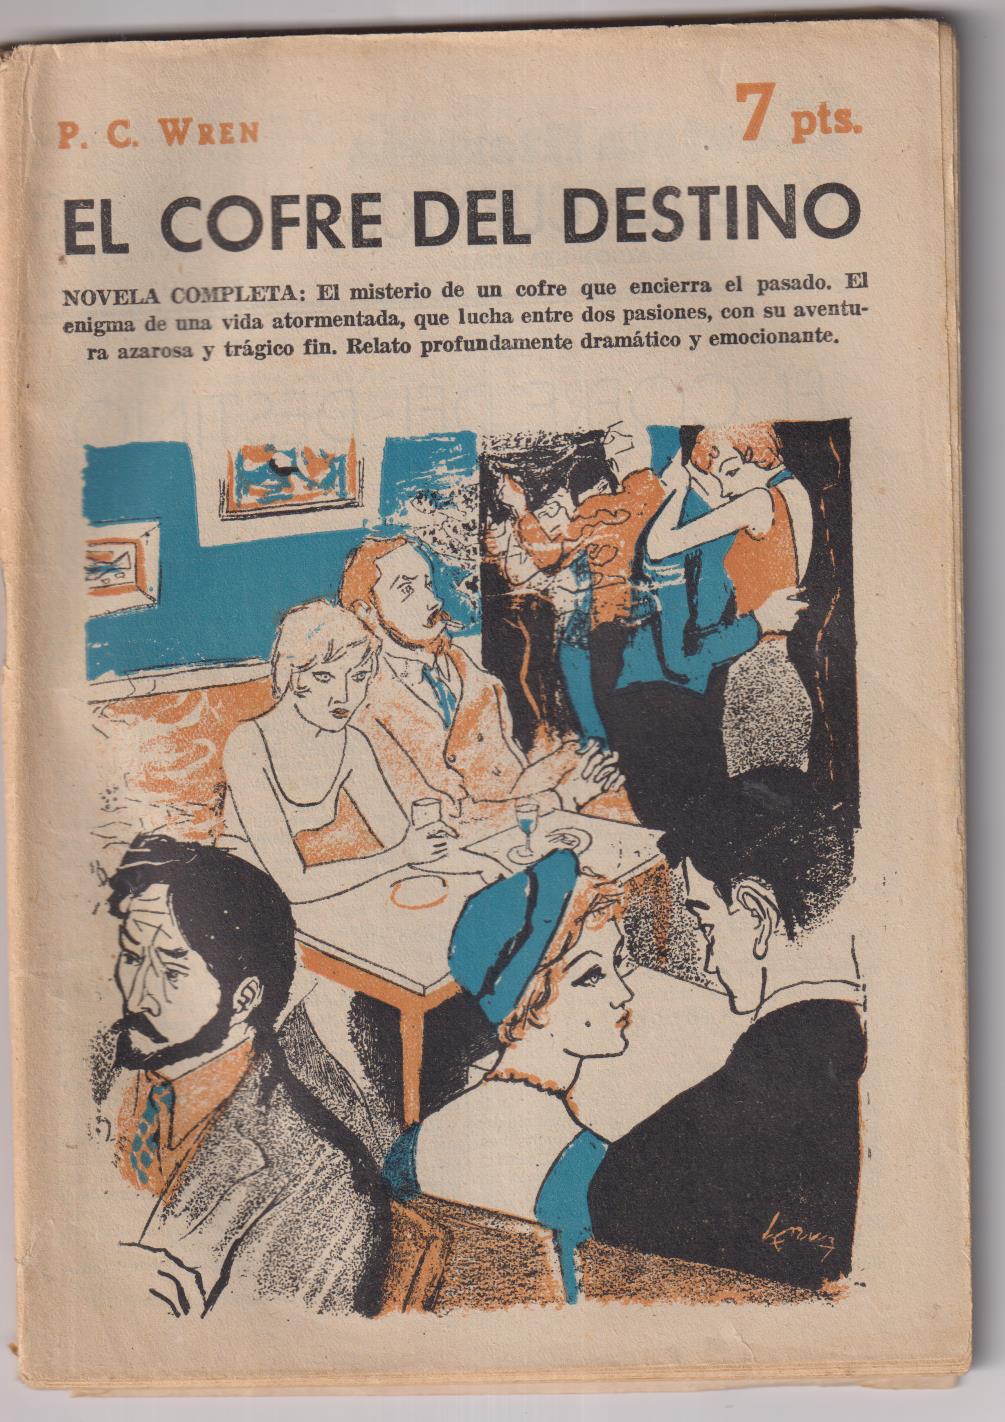 Revista literaria Novelas y Cuentos nº 1399. P.C. Wren. El Cofre del destino, año 1958